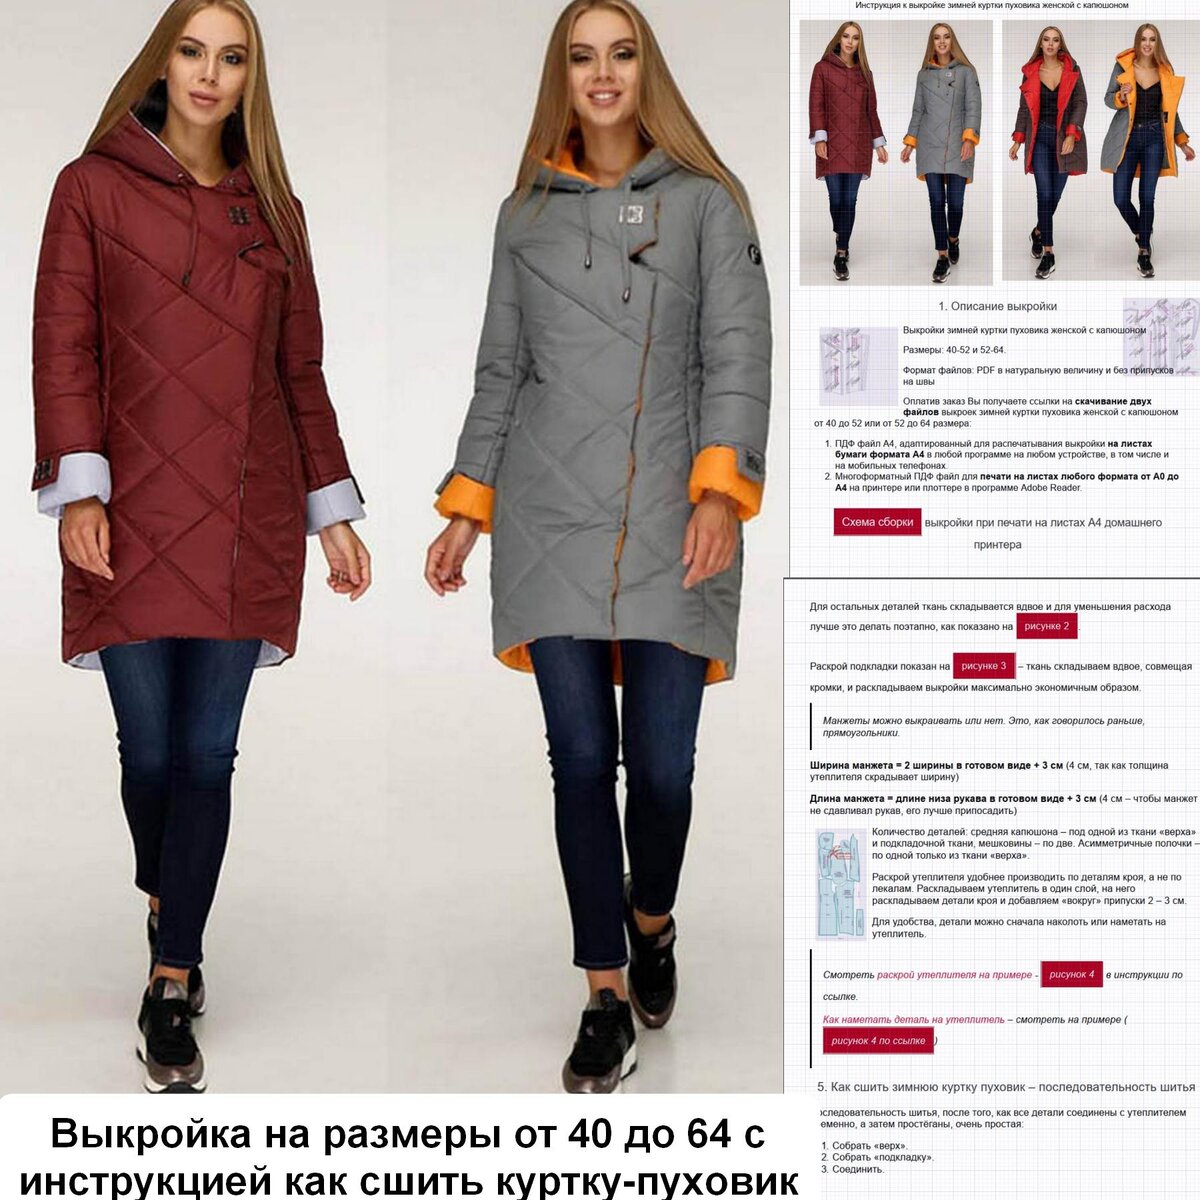 Выкройка женской зимней куртки Анастасия212